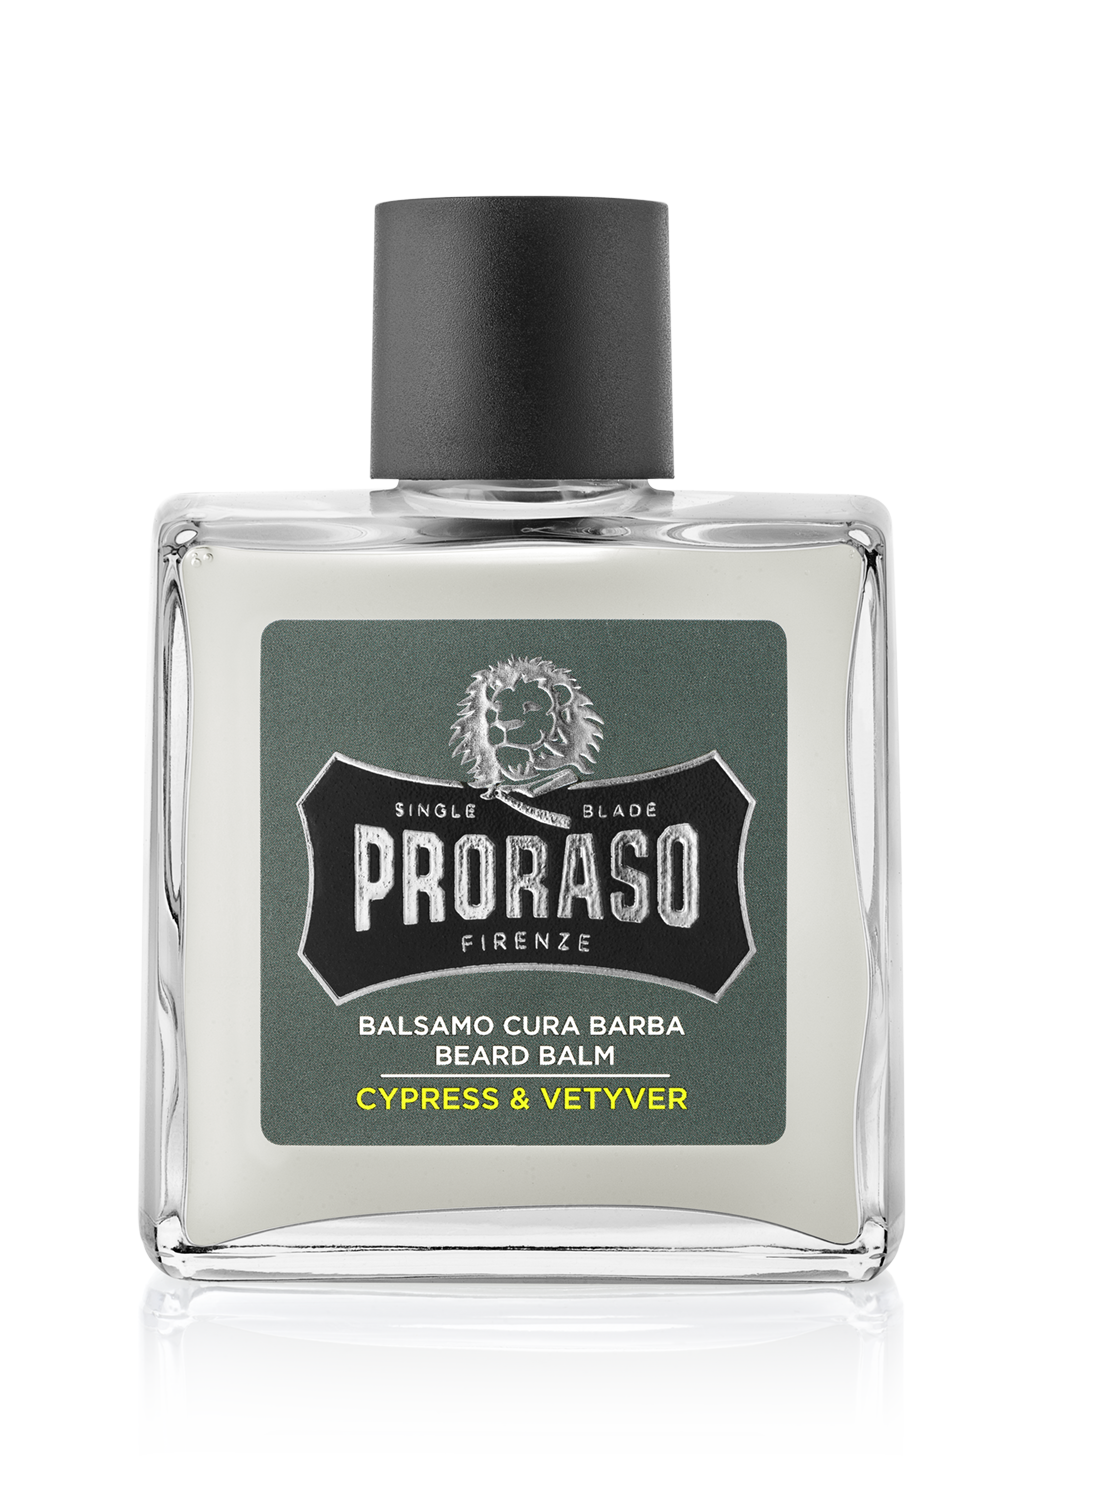 Proraso Cypress & Vetyver - Бальзам для бороды 100 мл